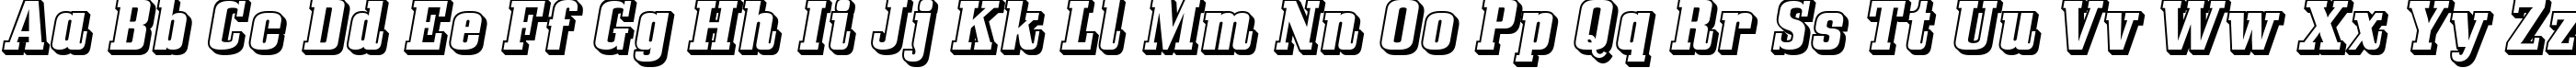 Пример написания английского алфавита шрифтом Bullpen 3D